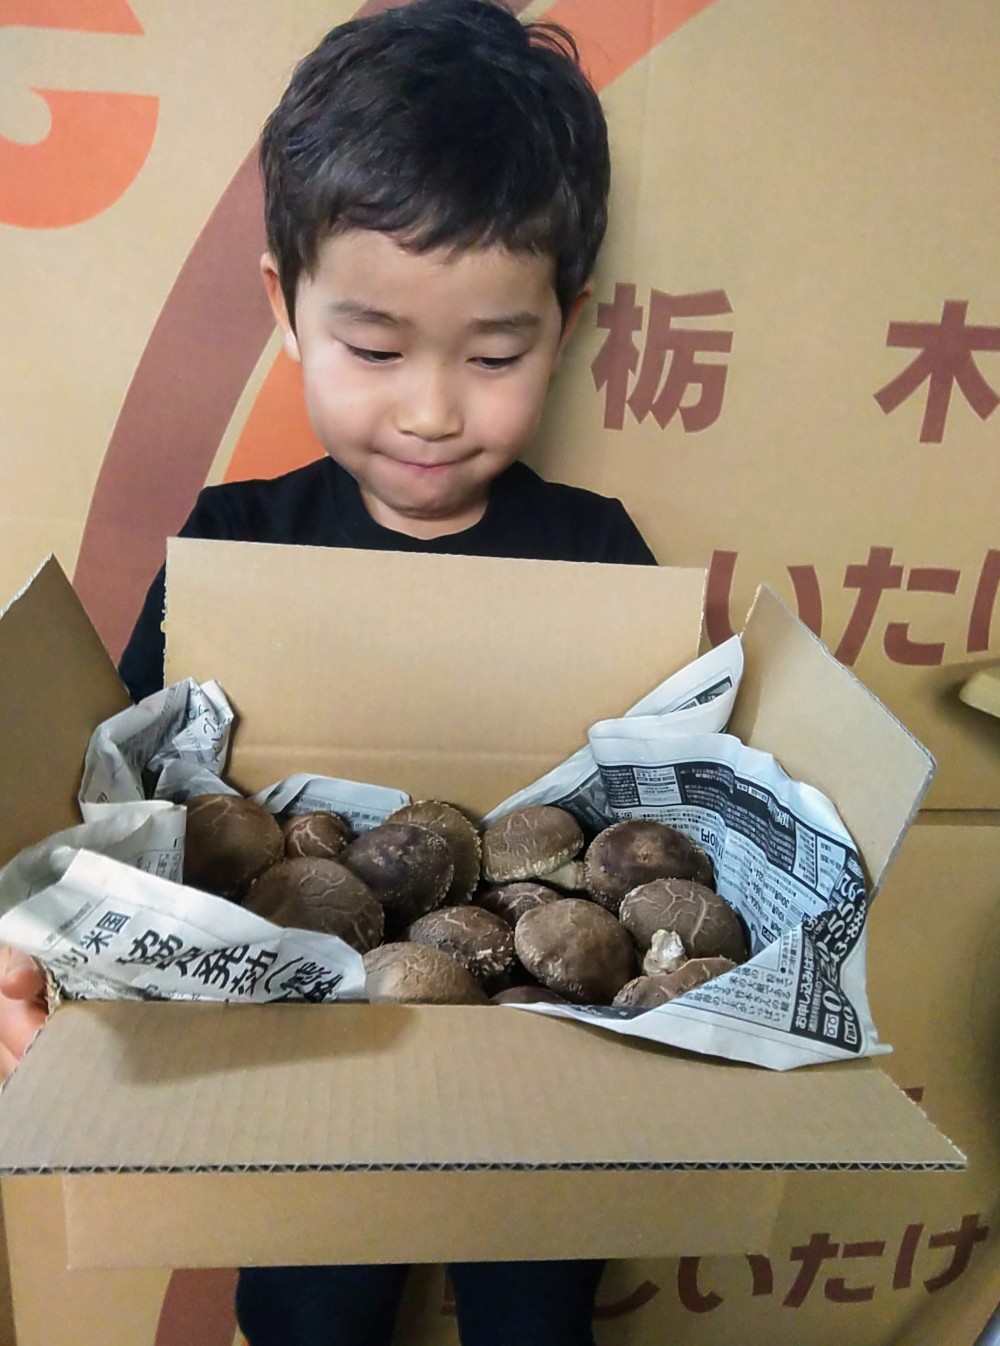 ふるさと納税 北海道 下川町 簡易包装 生しいたけ2kg 軸太 肉厚 椎茸